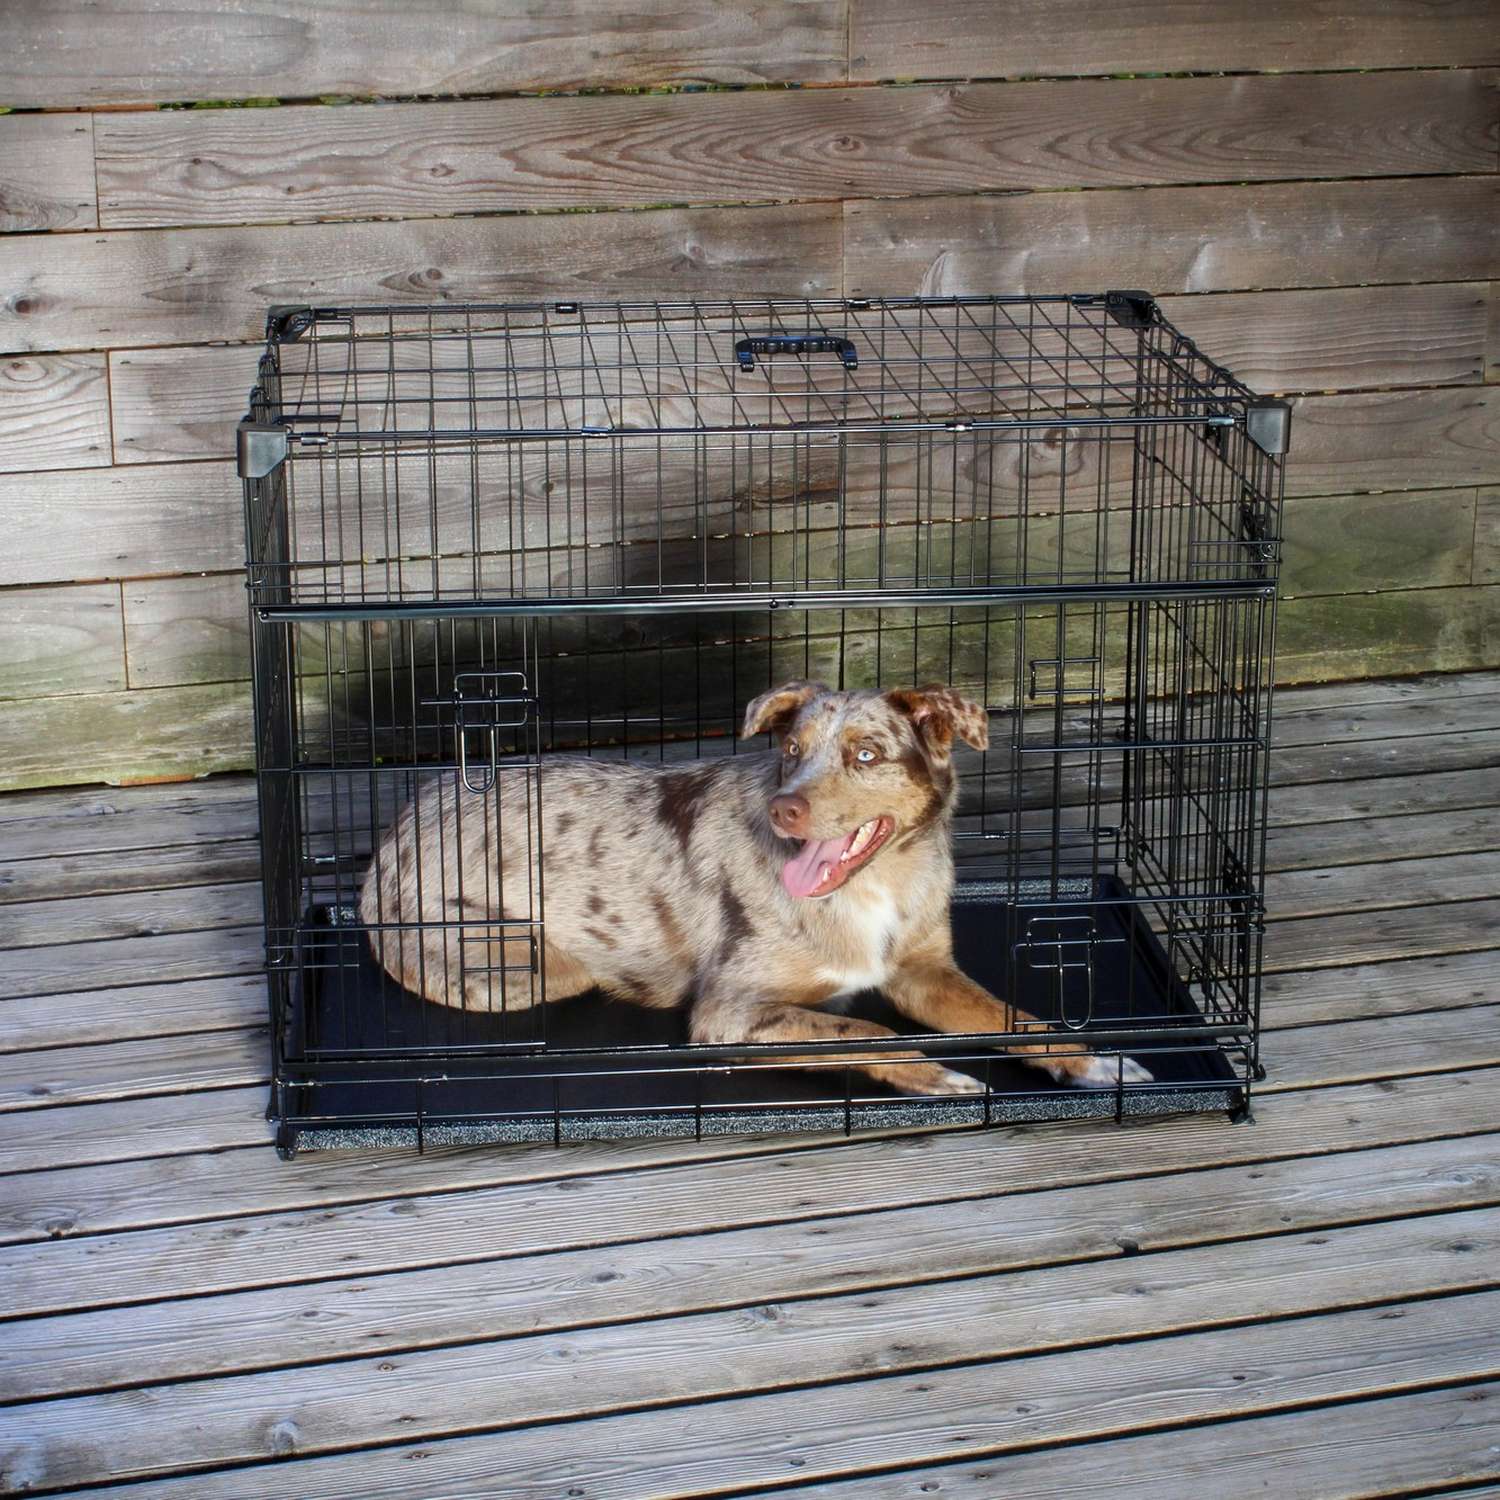 Cage de transport chien taille M/L pliable